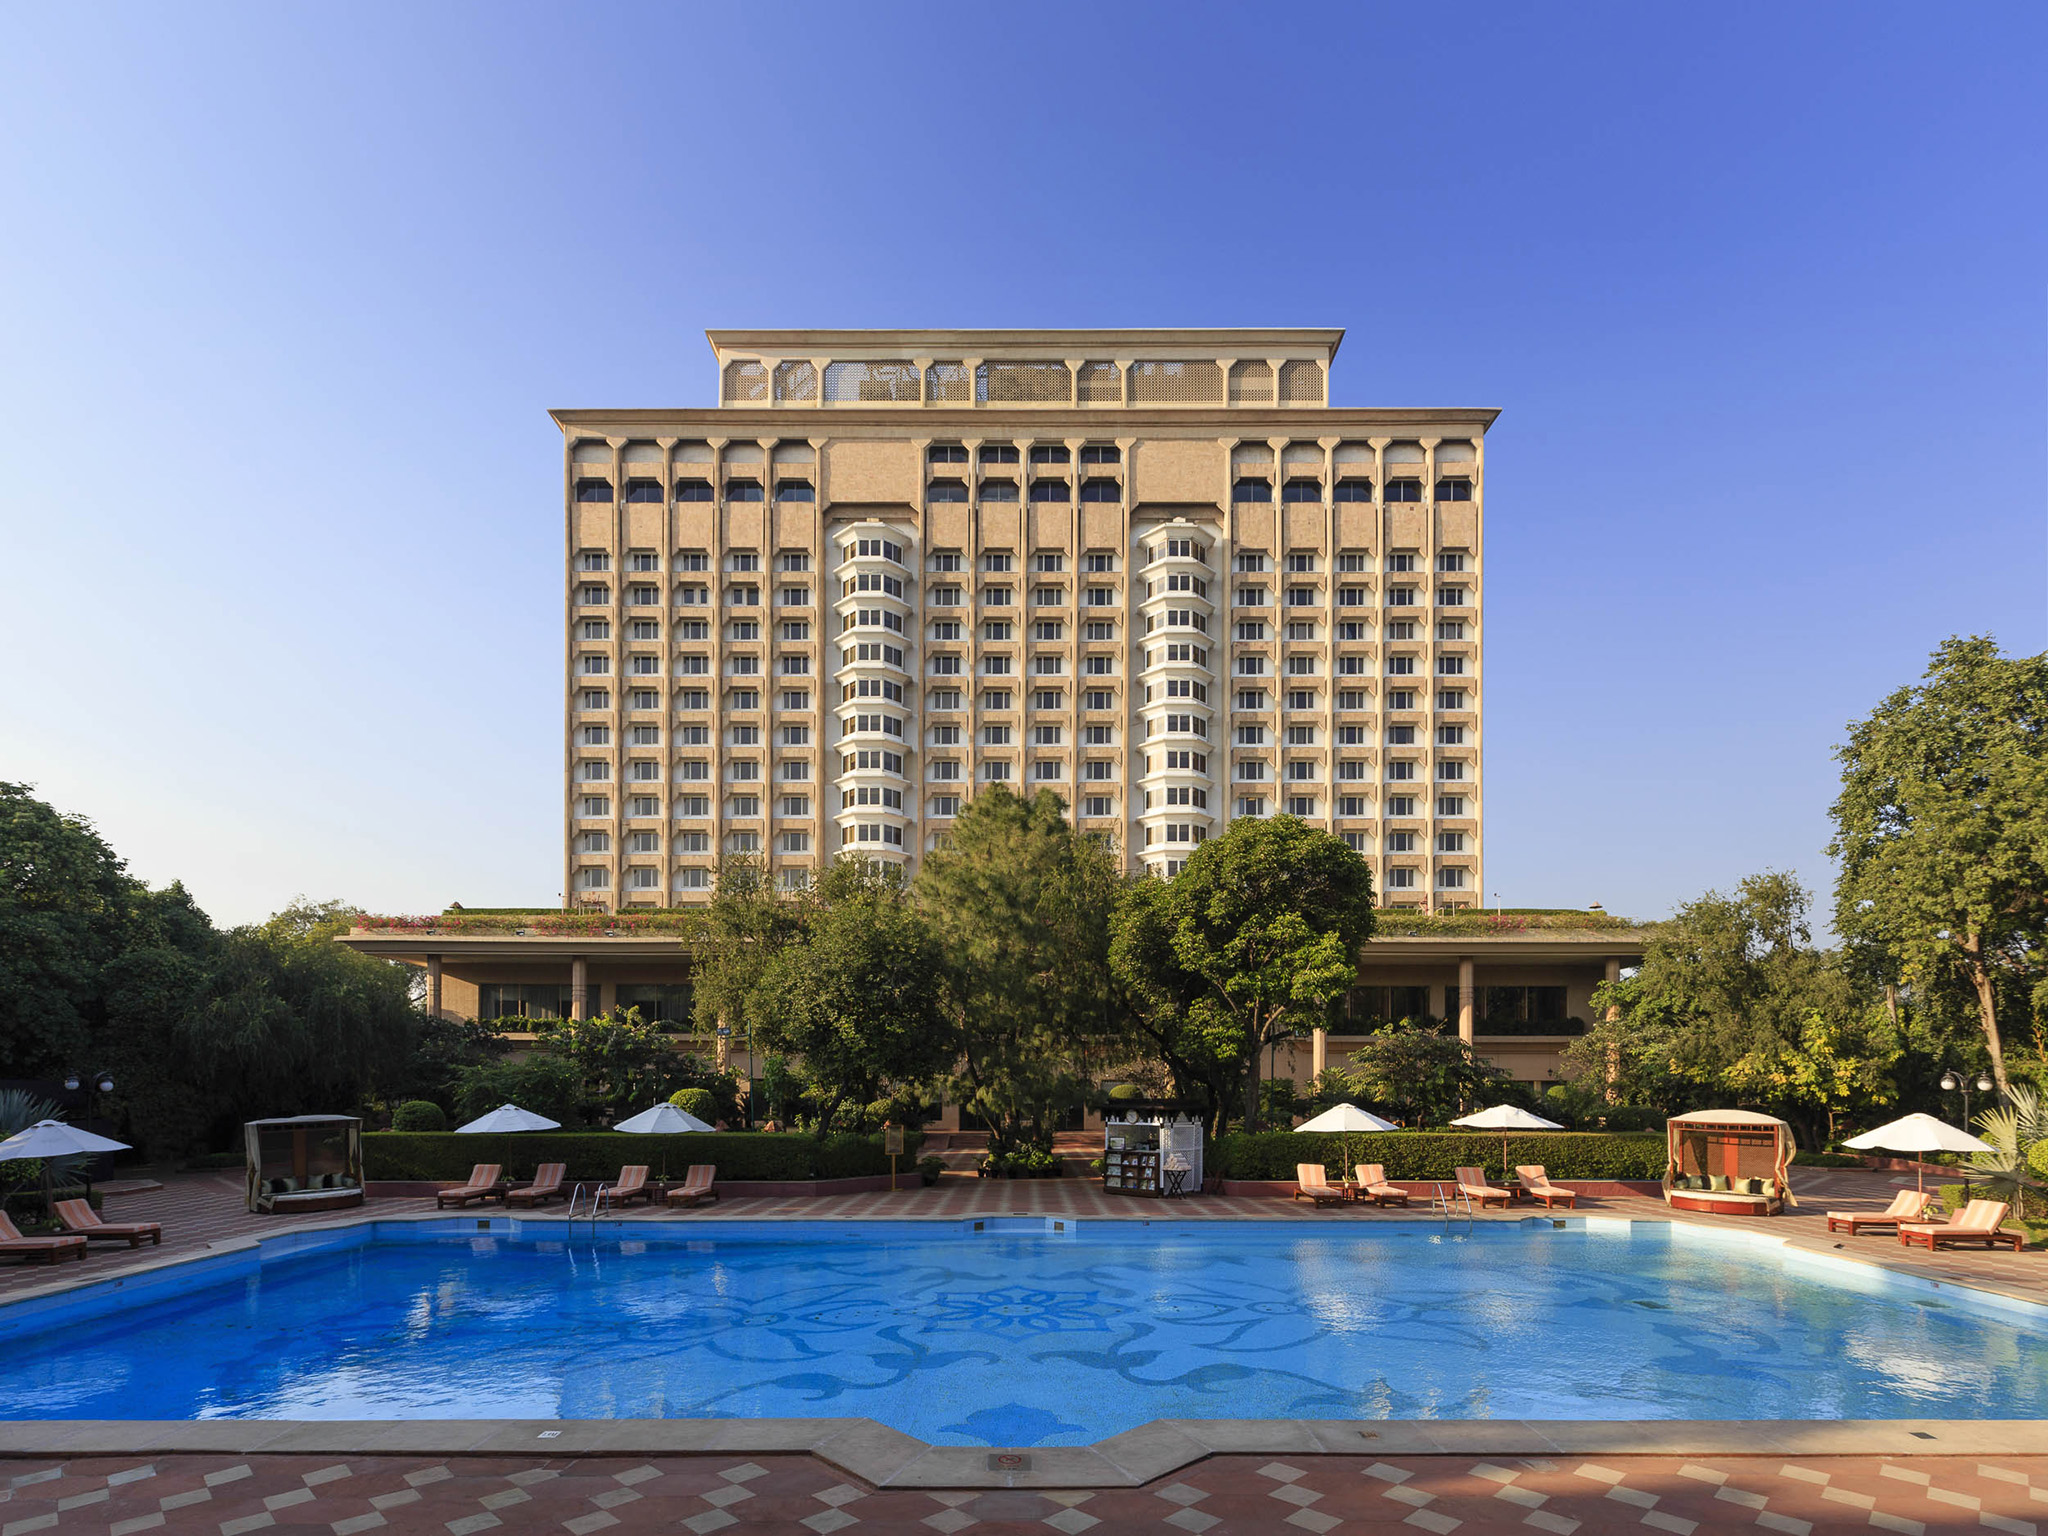 Taj-hotel